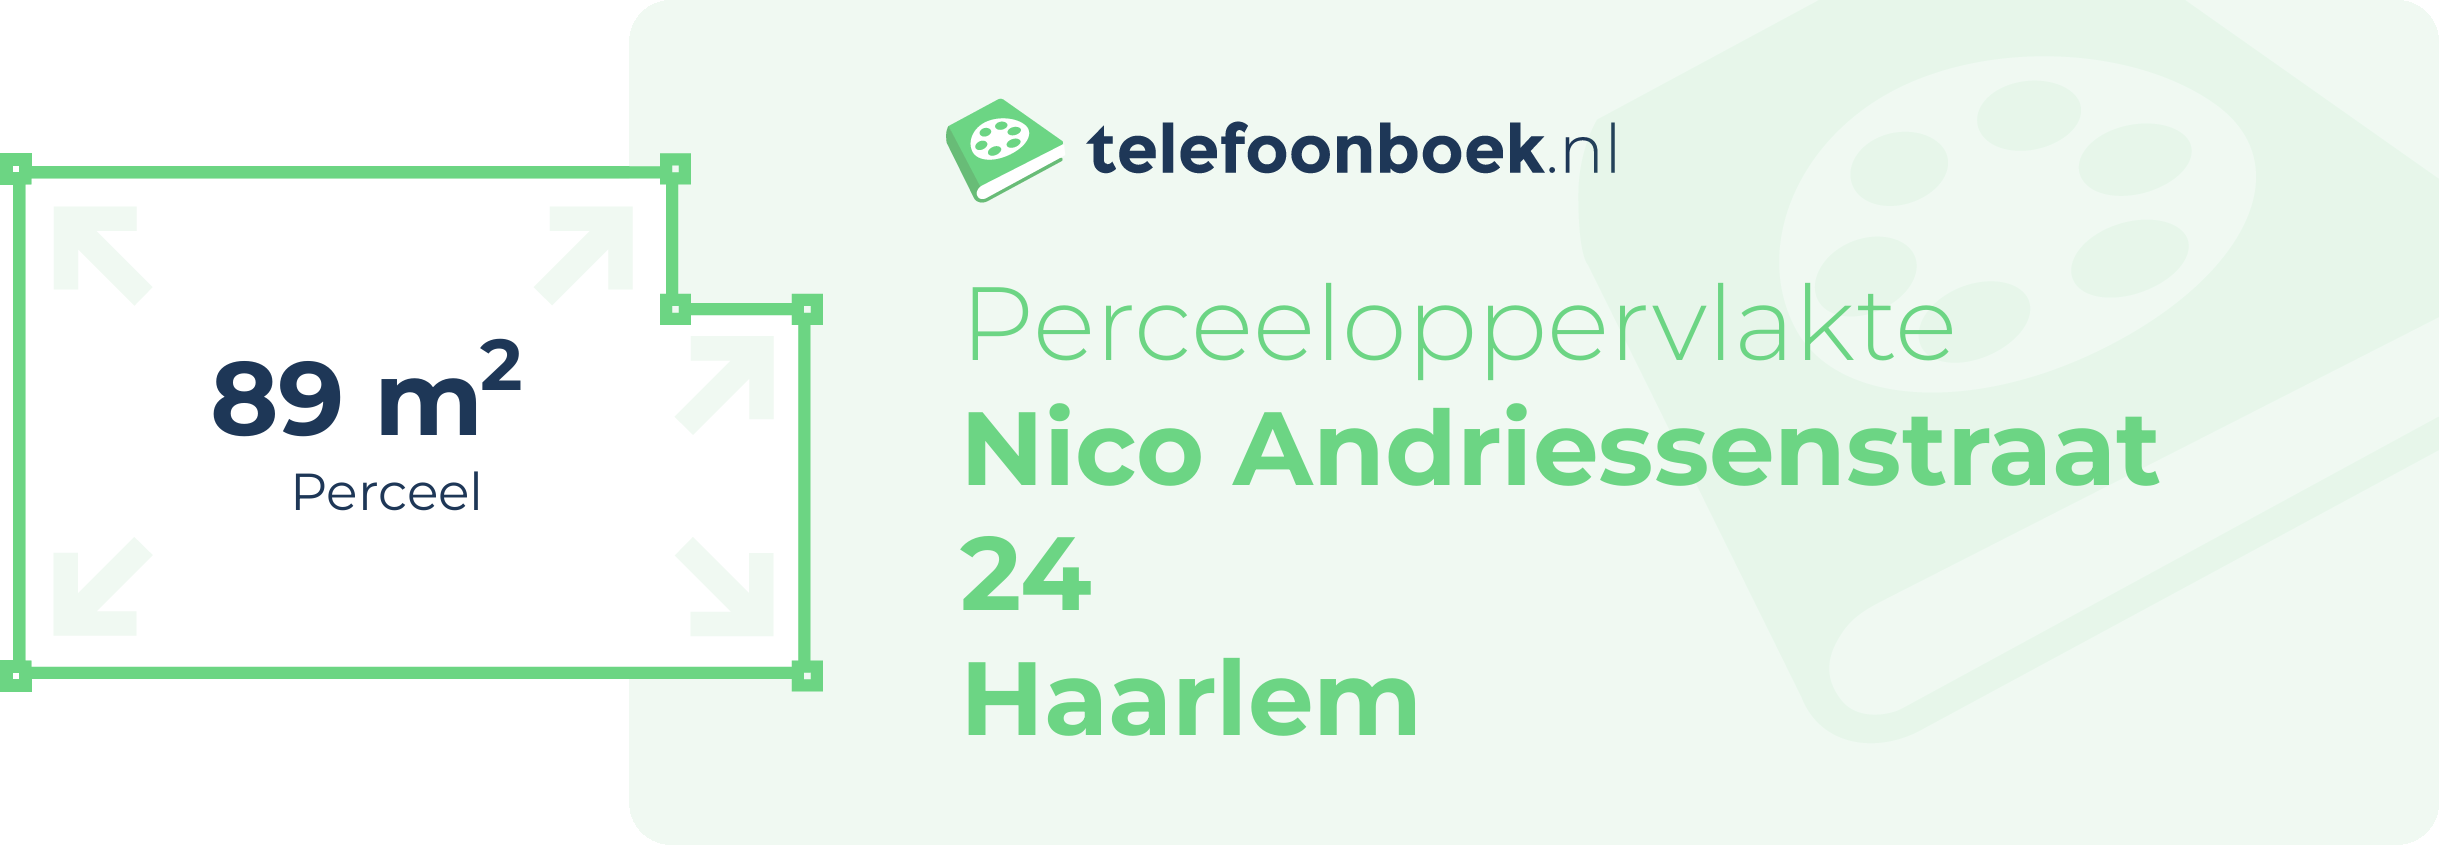 Perceeloppervlakte Nico Andriessenstraat 24 Haarlem